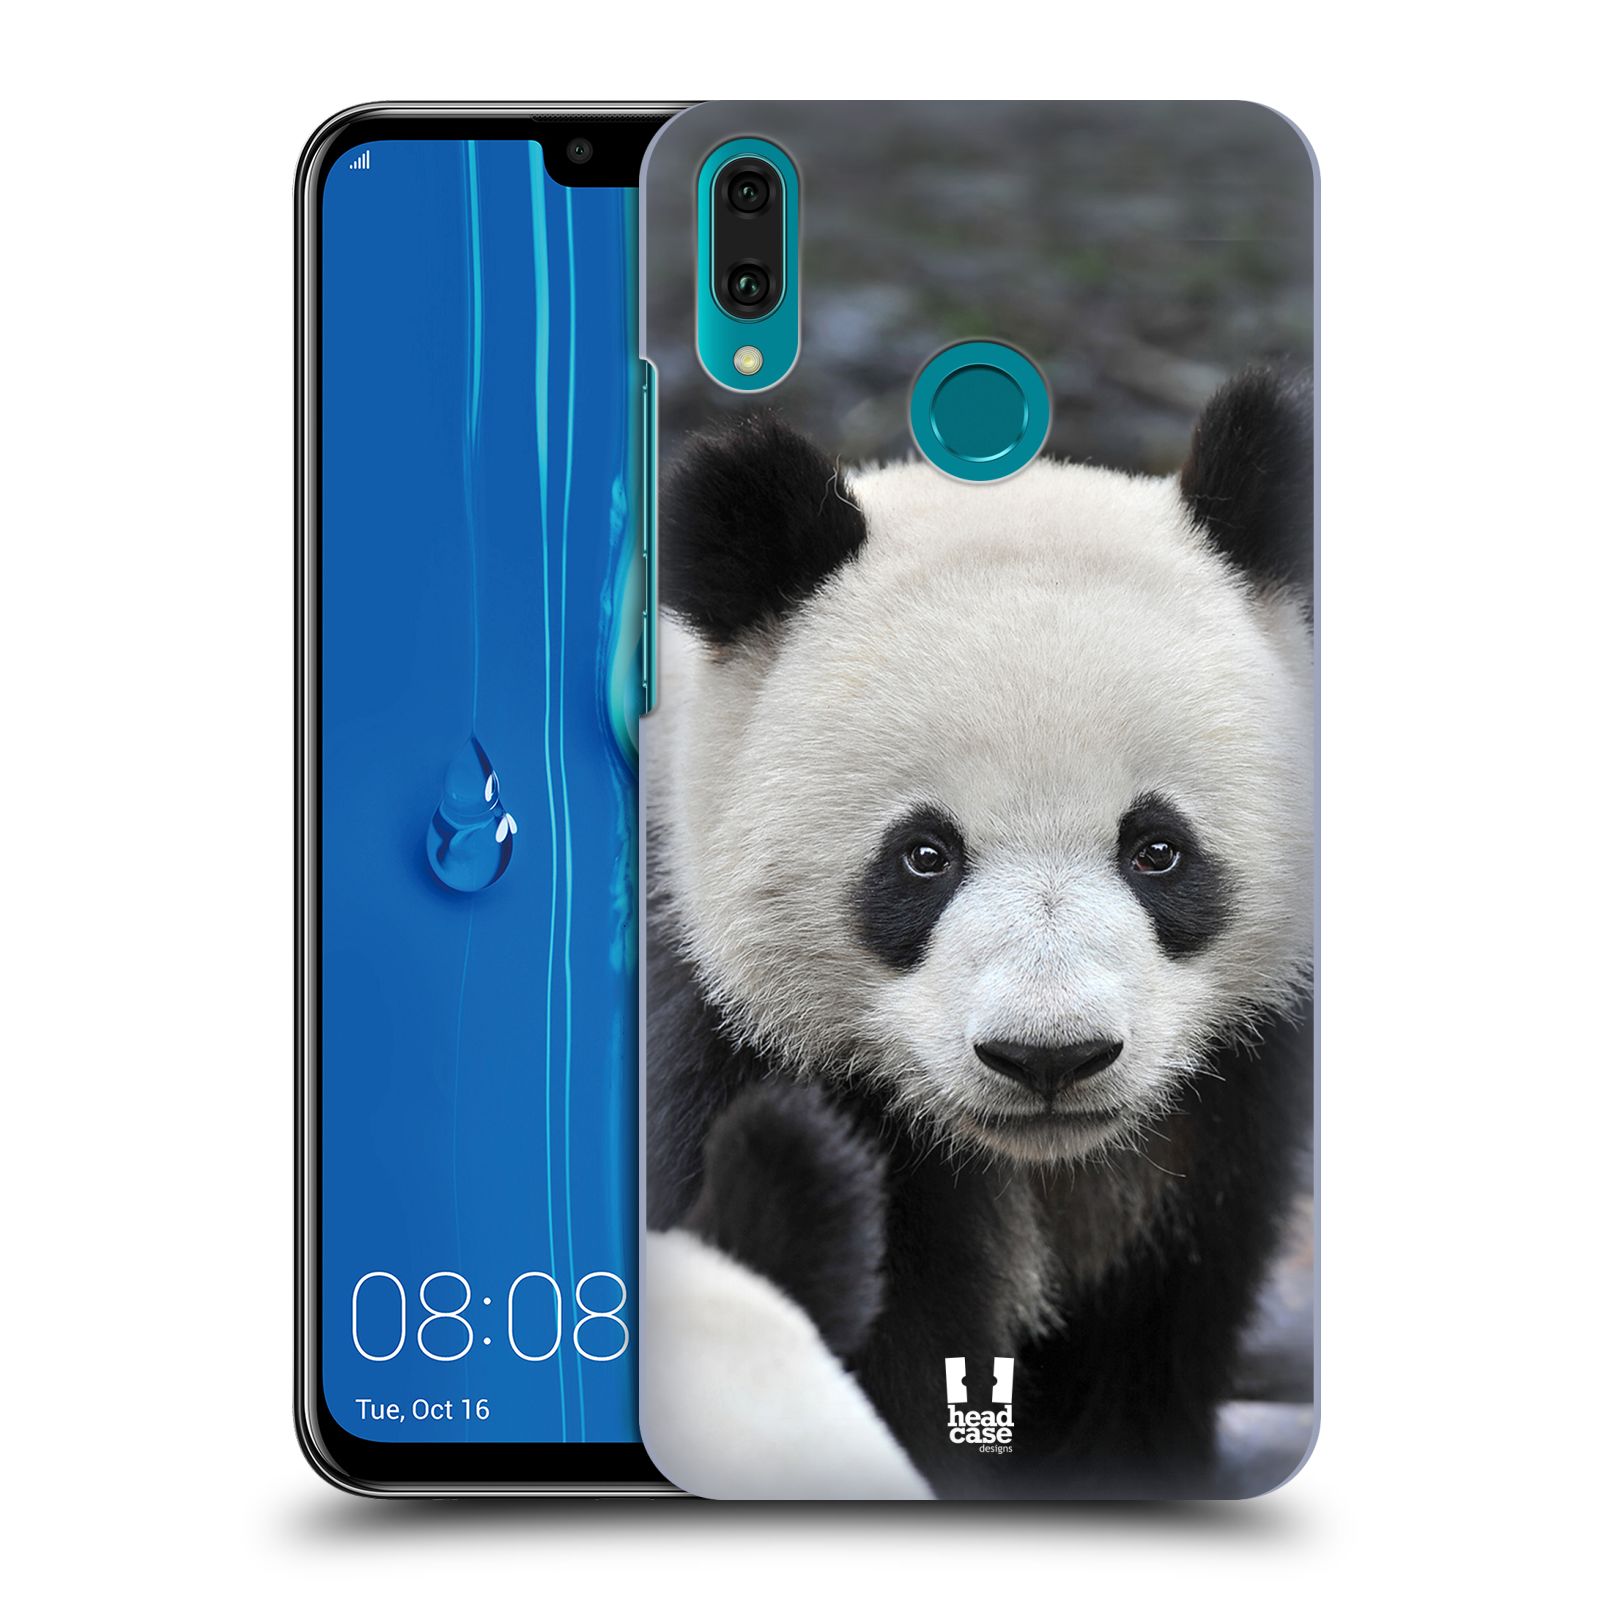 Pouzdro na mobil Huawei Y9 2019 - HEAD CASE - vzor Divočina, Divoký život a zvířata foto MEDVĚD PANDA